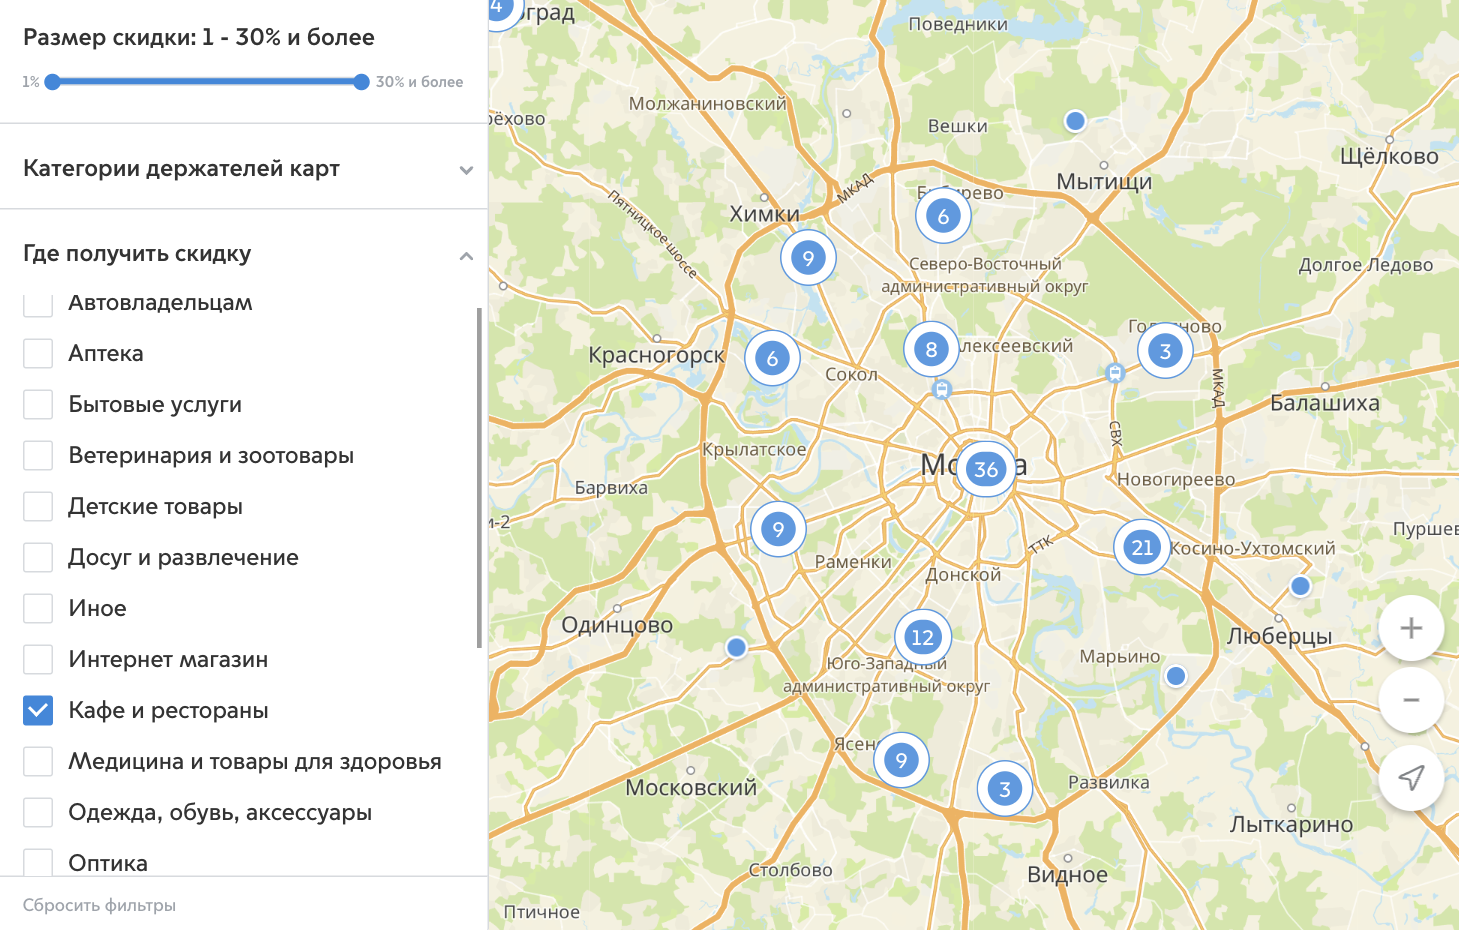 На карте есть фильтр, где можно выбрать, какие места вас интересуют, например кафе и рестораны